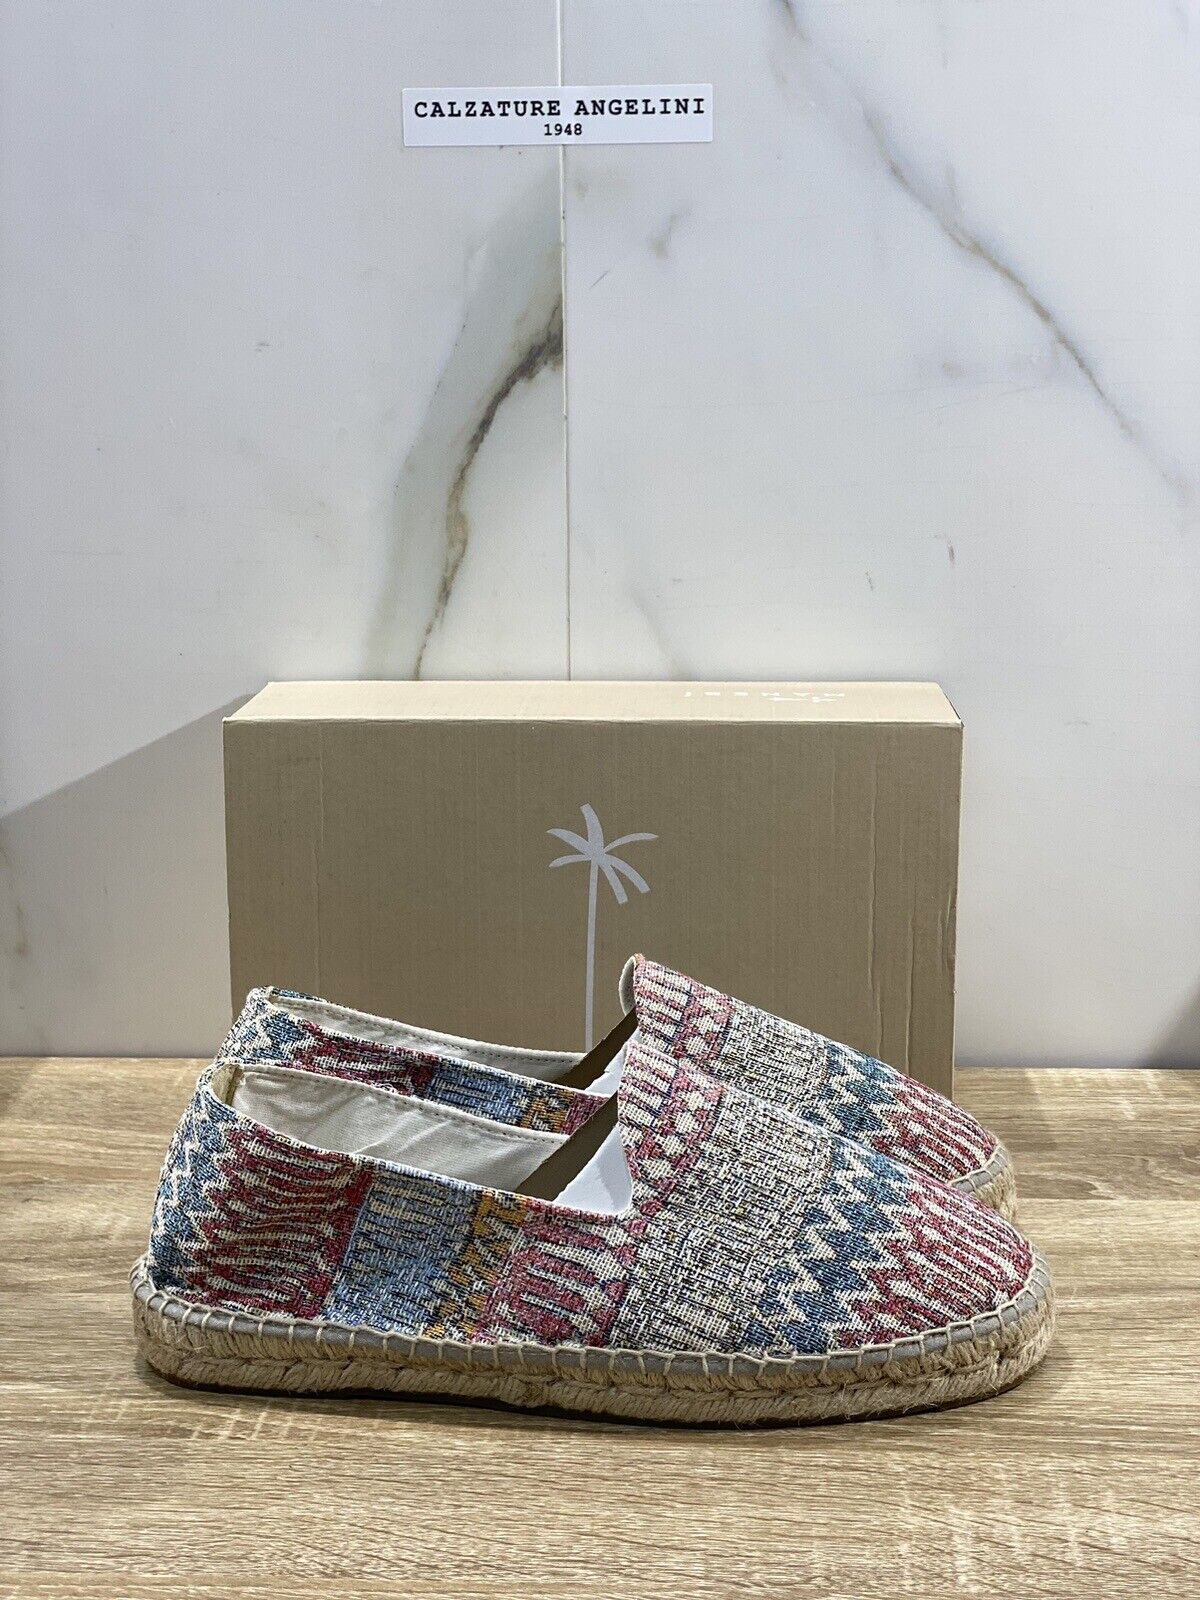 Manebi’ Uomo Espadrilles Mocassino Tulum Multicolor Casual Summer Shoes 42